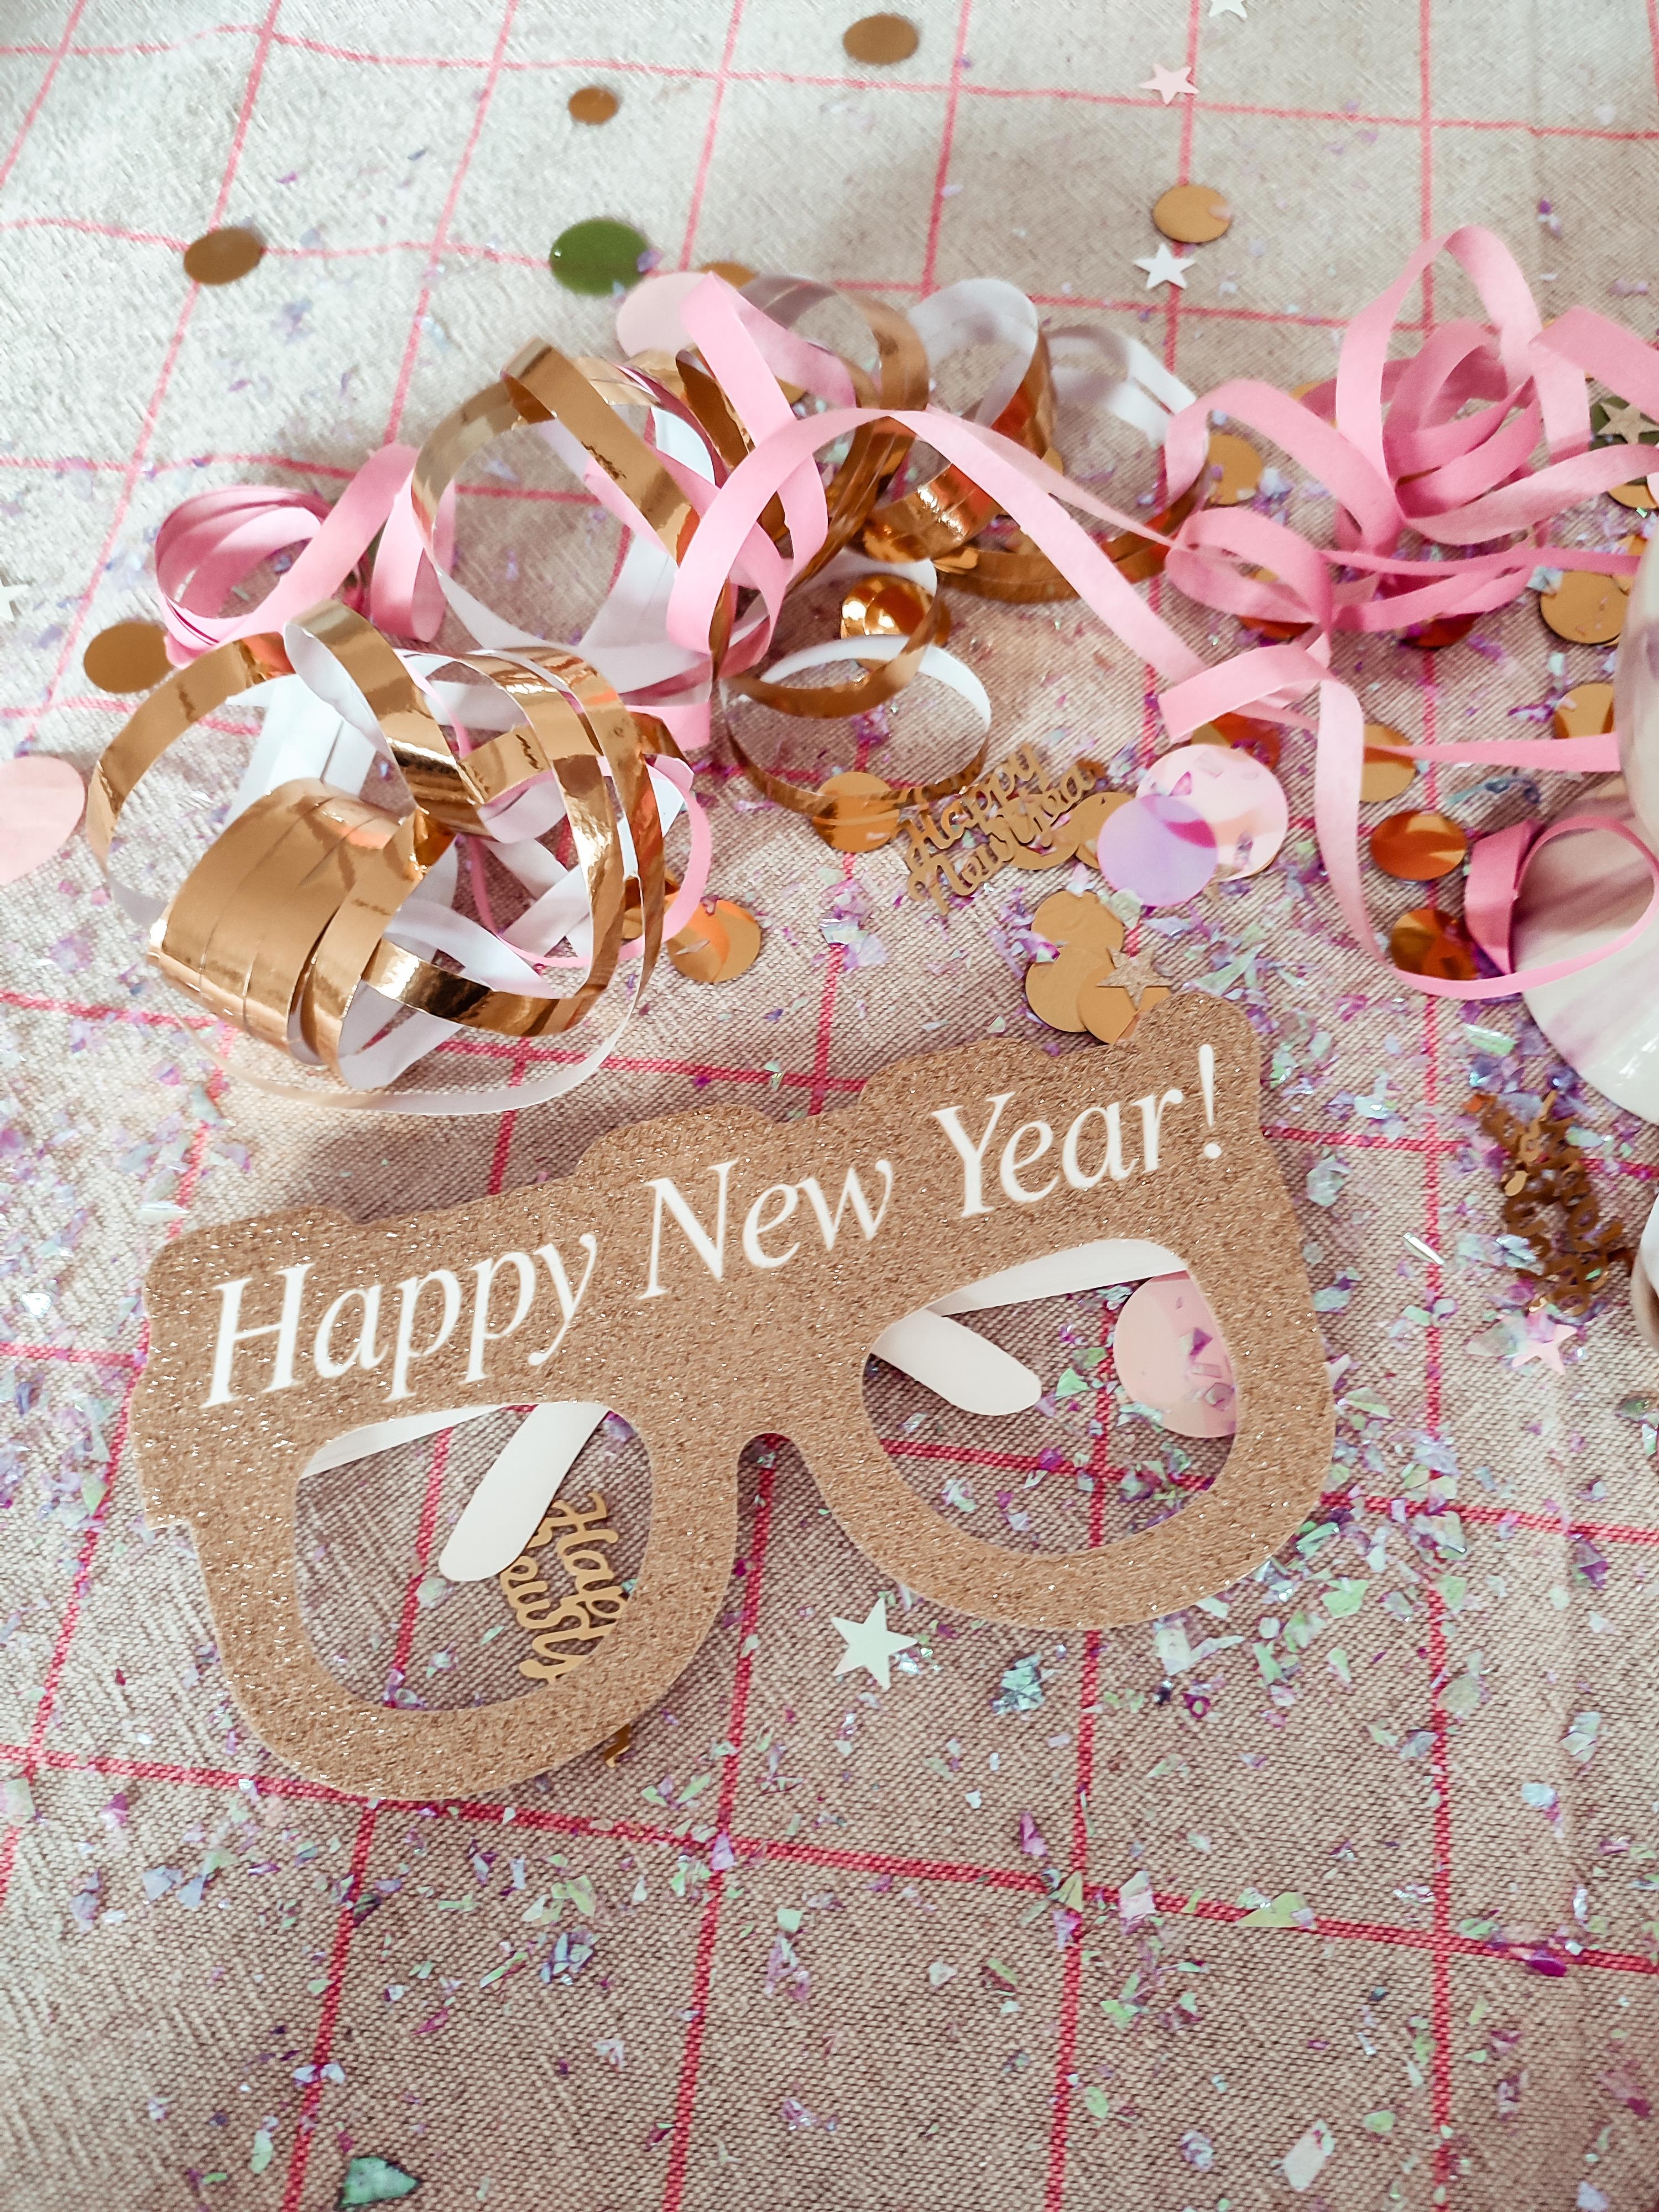 Frohes neues Jahr 2023✨

#neujahr #happynewyear #frohesneuesjahr #2023